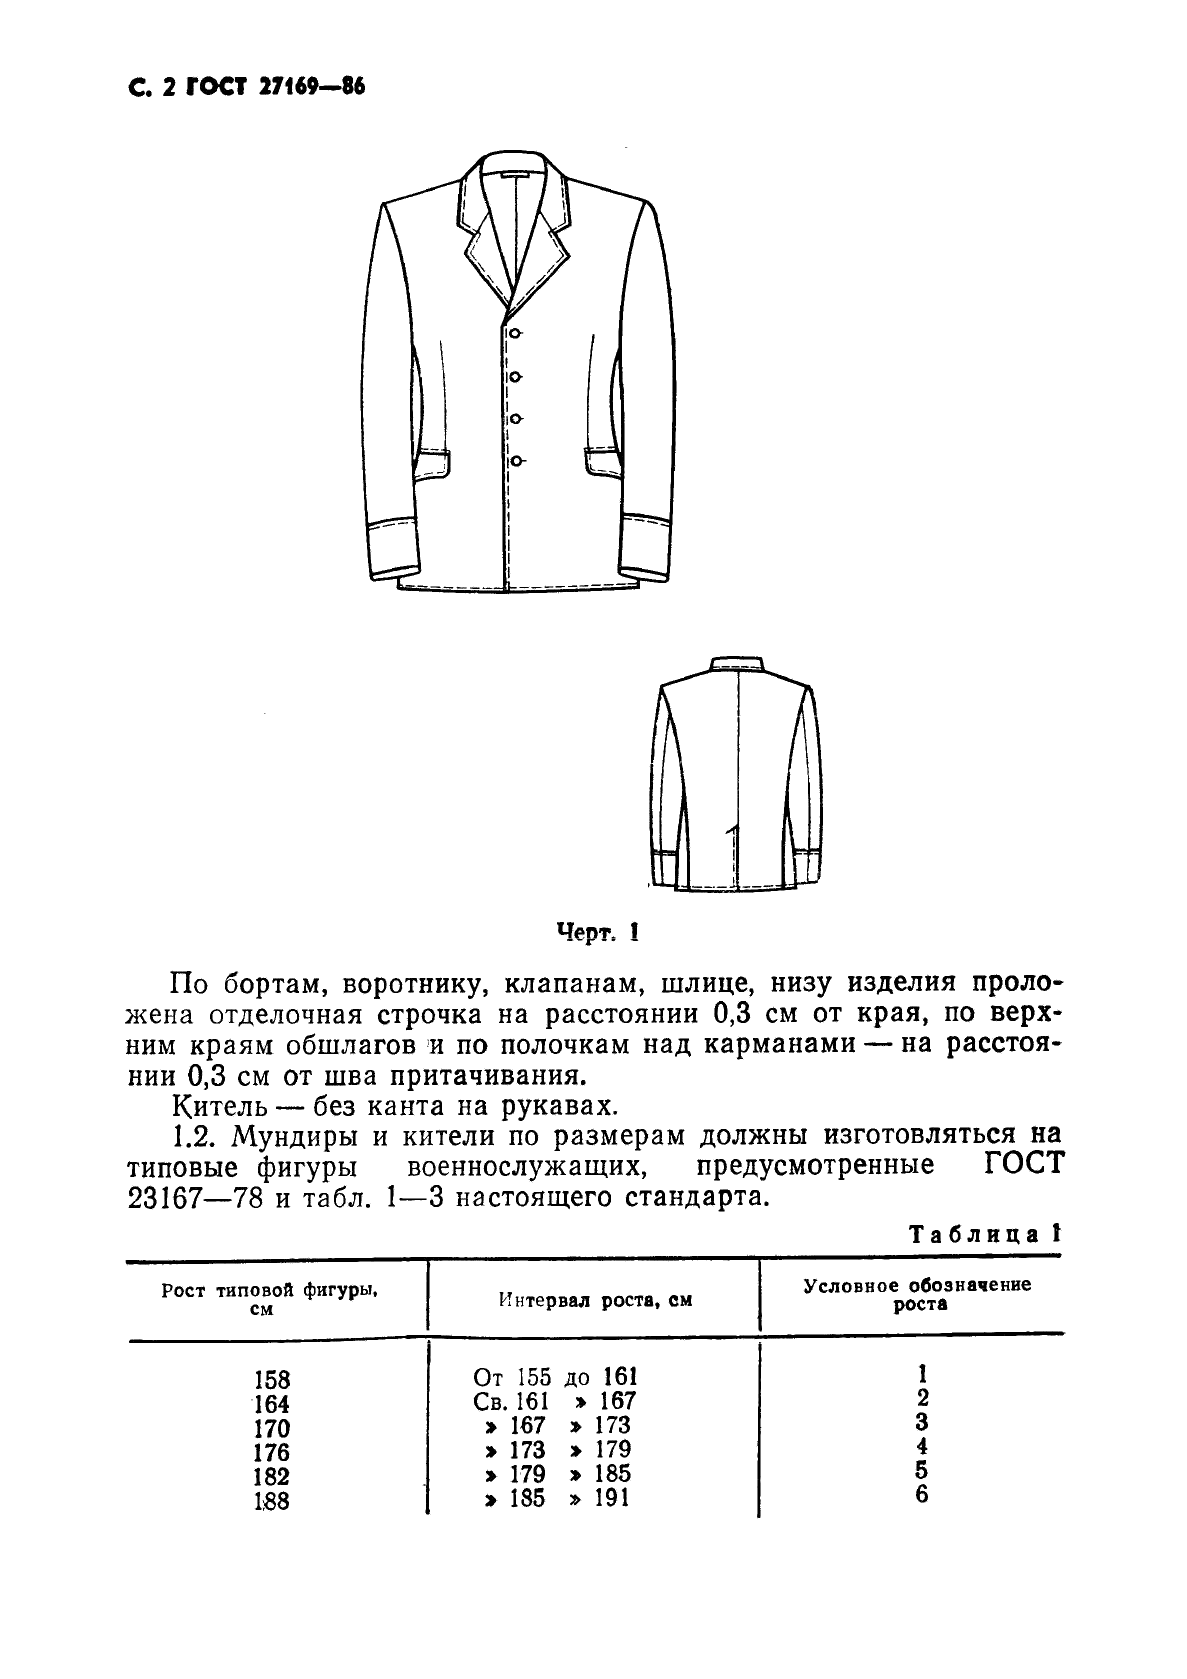 ГОСТ 27169-86 Мундир и китель для офицеров и прапорщиков Советской Армии. Технические условия (фото 4 из 42)